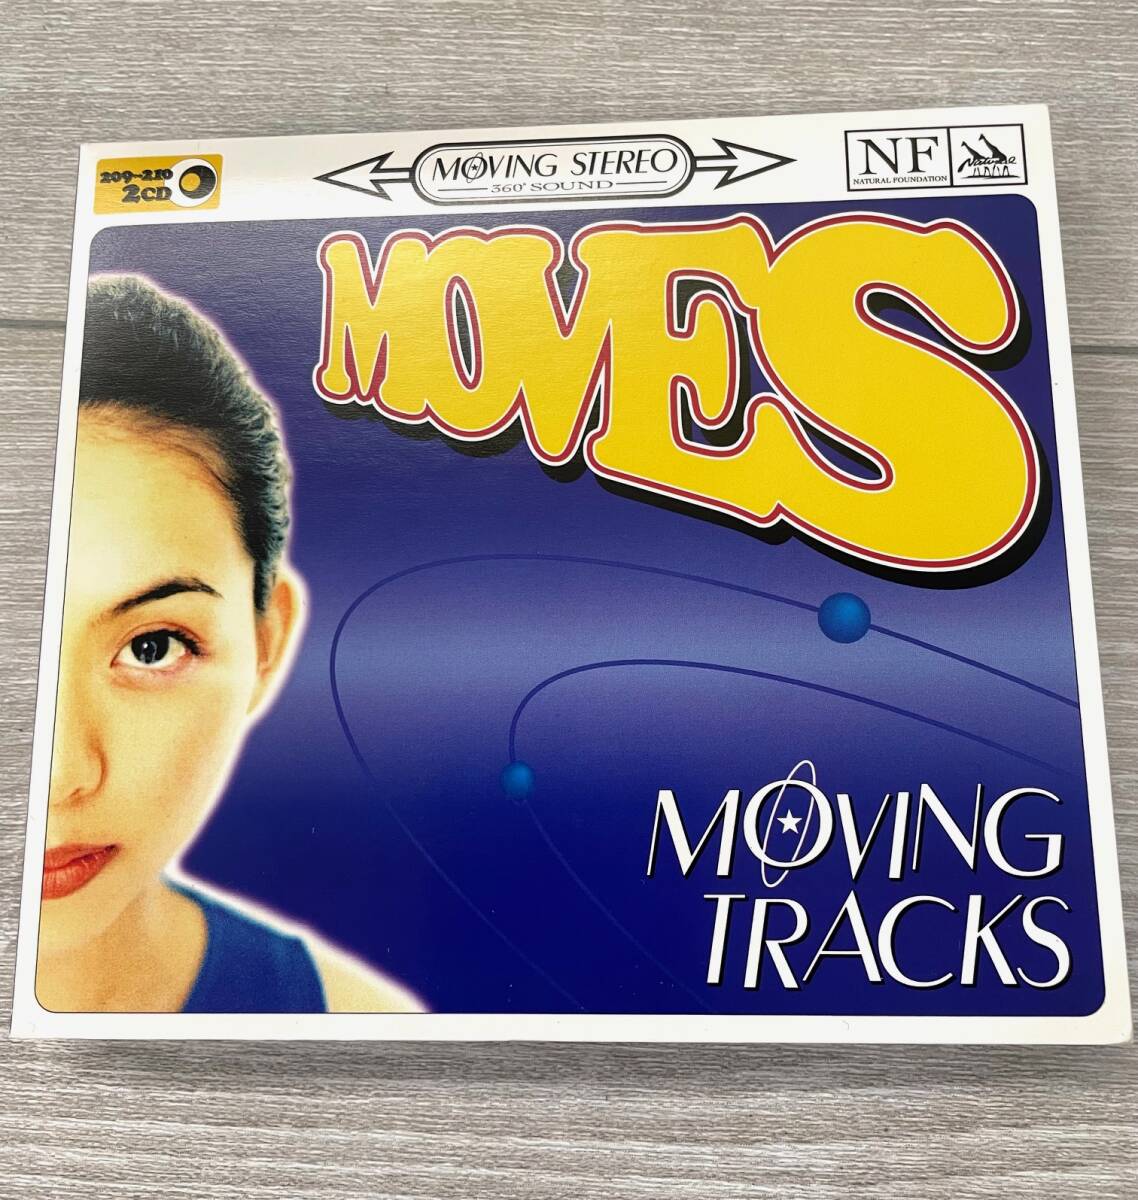 MOVES - MOVING TRACKS (ナチュラル・ファウンデーション'96 / 7traks. 2CD 見開き仕様 )の画像1